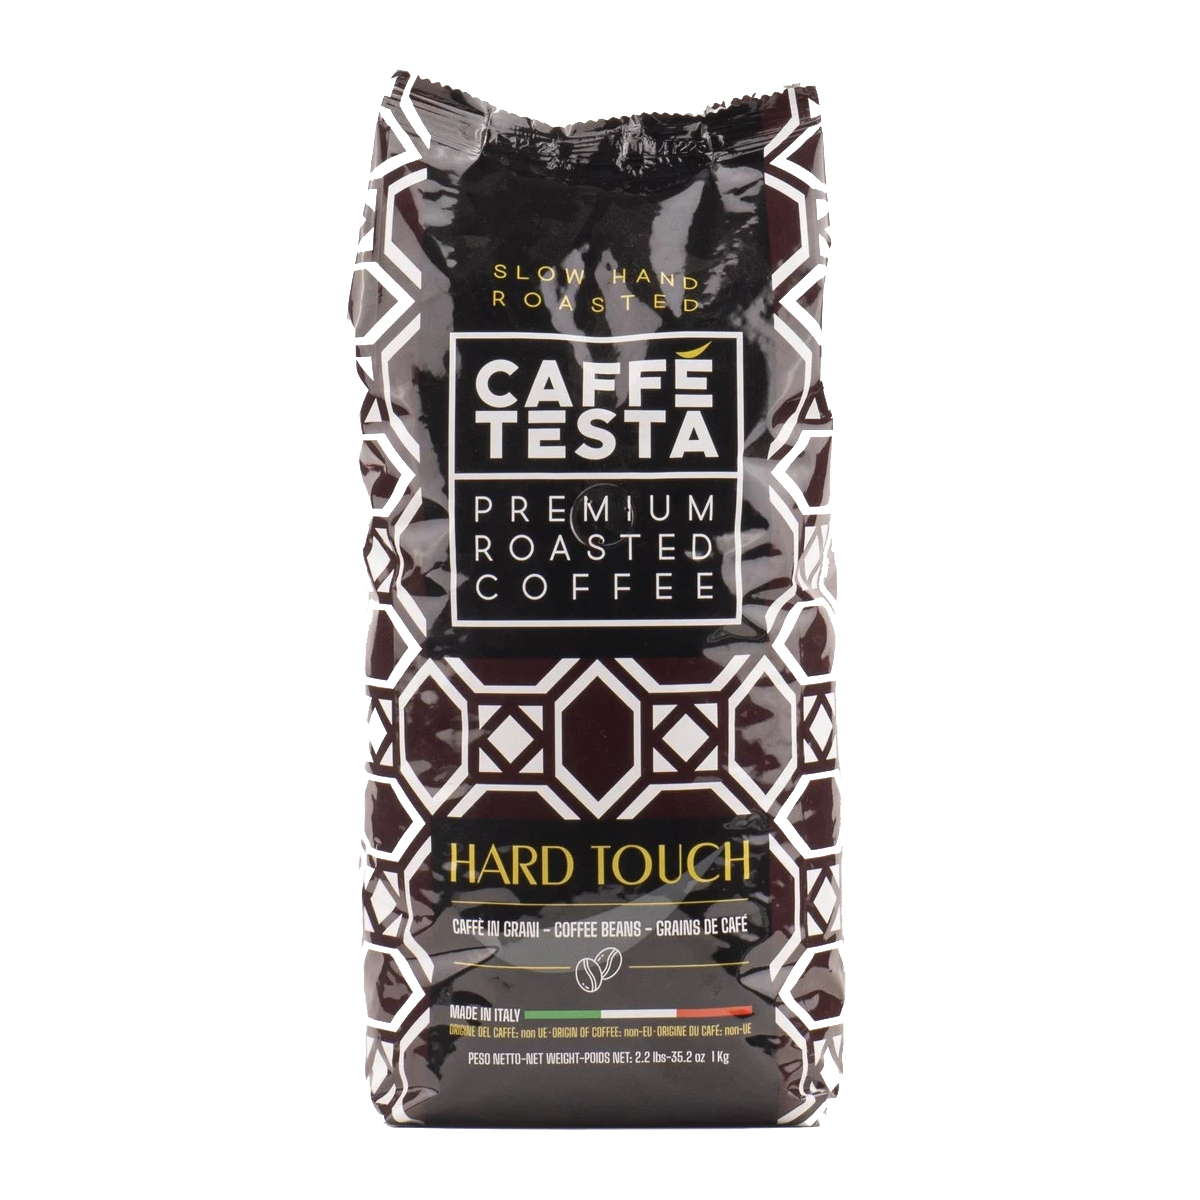 Кофе в зернах Caffe Testa Hard Touch, 1 кг кофе в зернах diemme caffe miscela excellent 1 кг